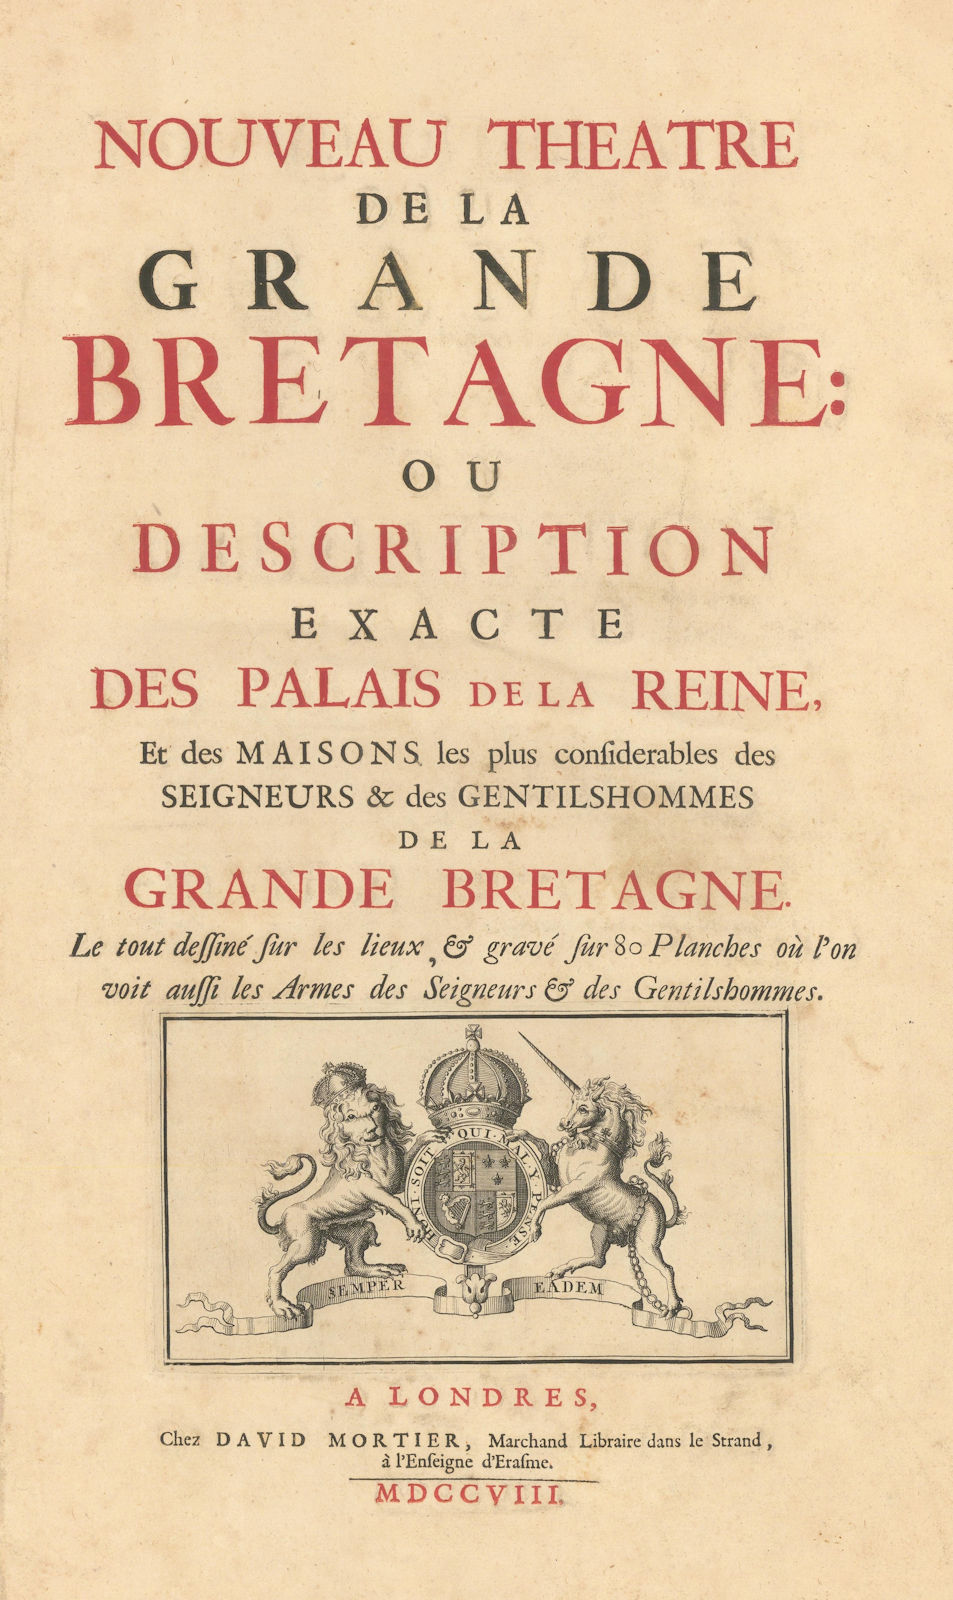 Nouveau Theatre de la Grande Bretagne. Kip Kynff Mortier. Title page 1709